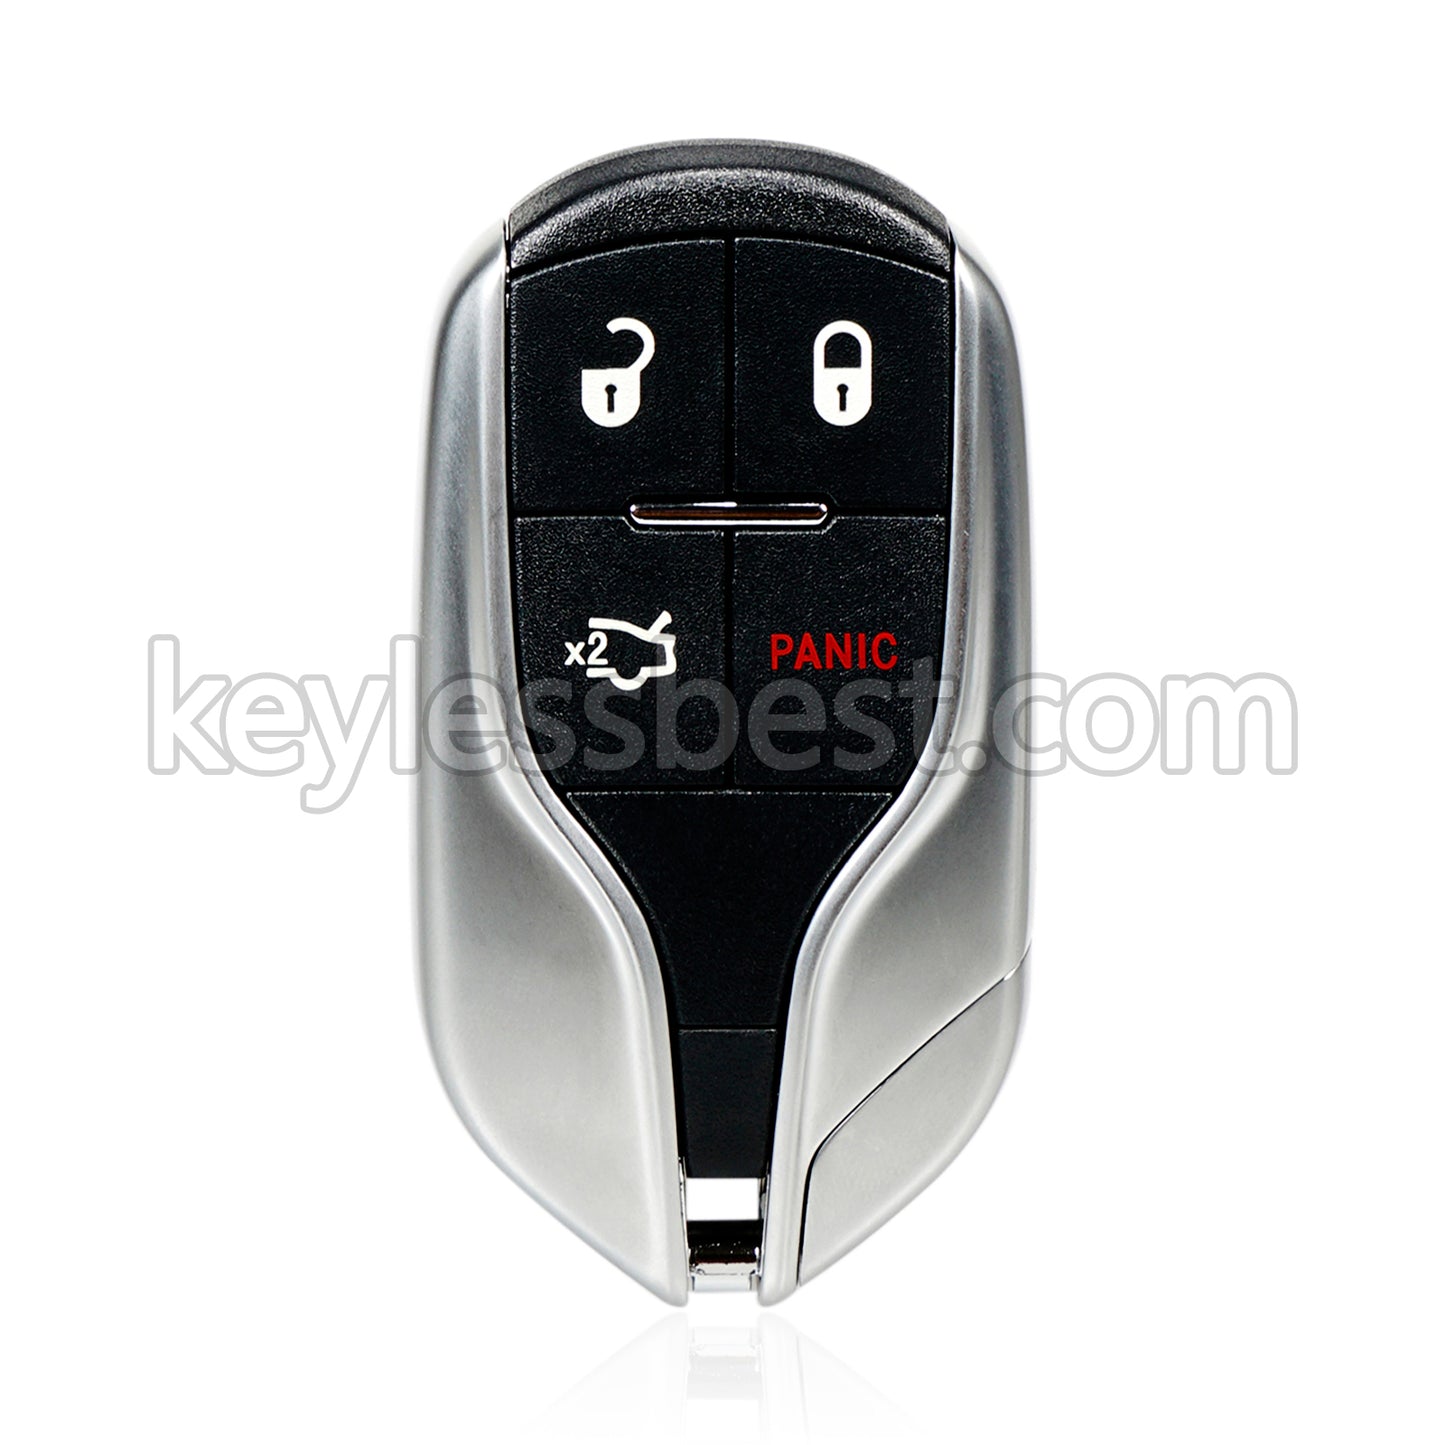 2014 - 2016 Maserati Ghibli Quattroporte / 4 Buttons Remote Key / M3N-7393490 / 433MHz